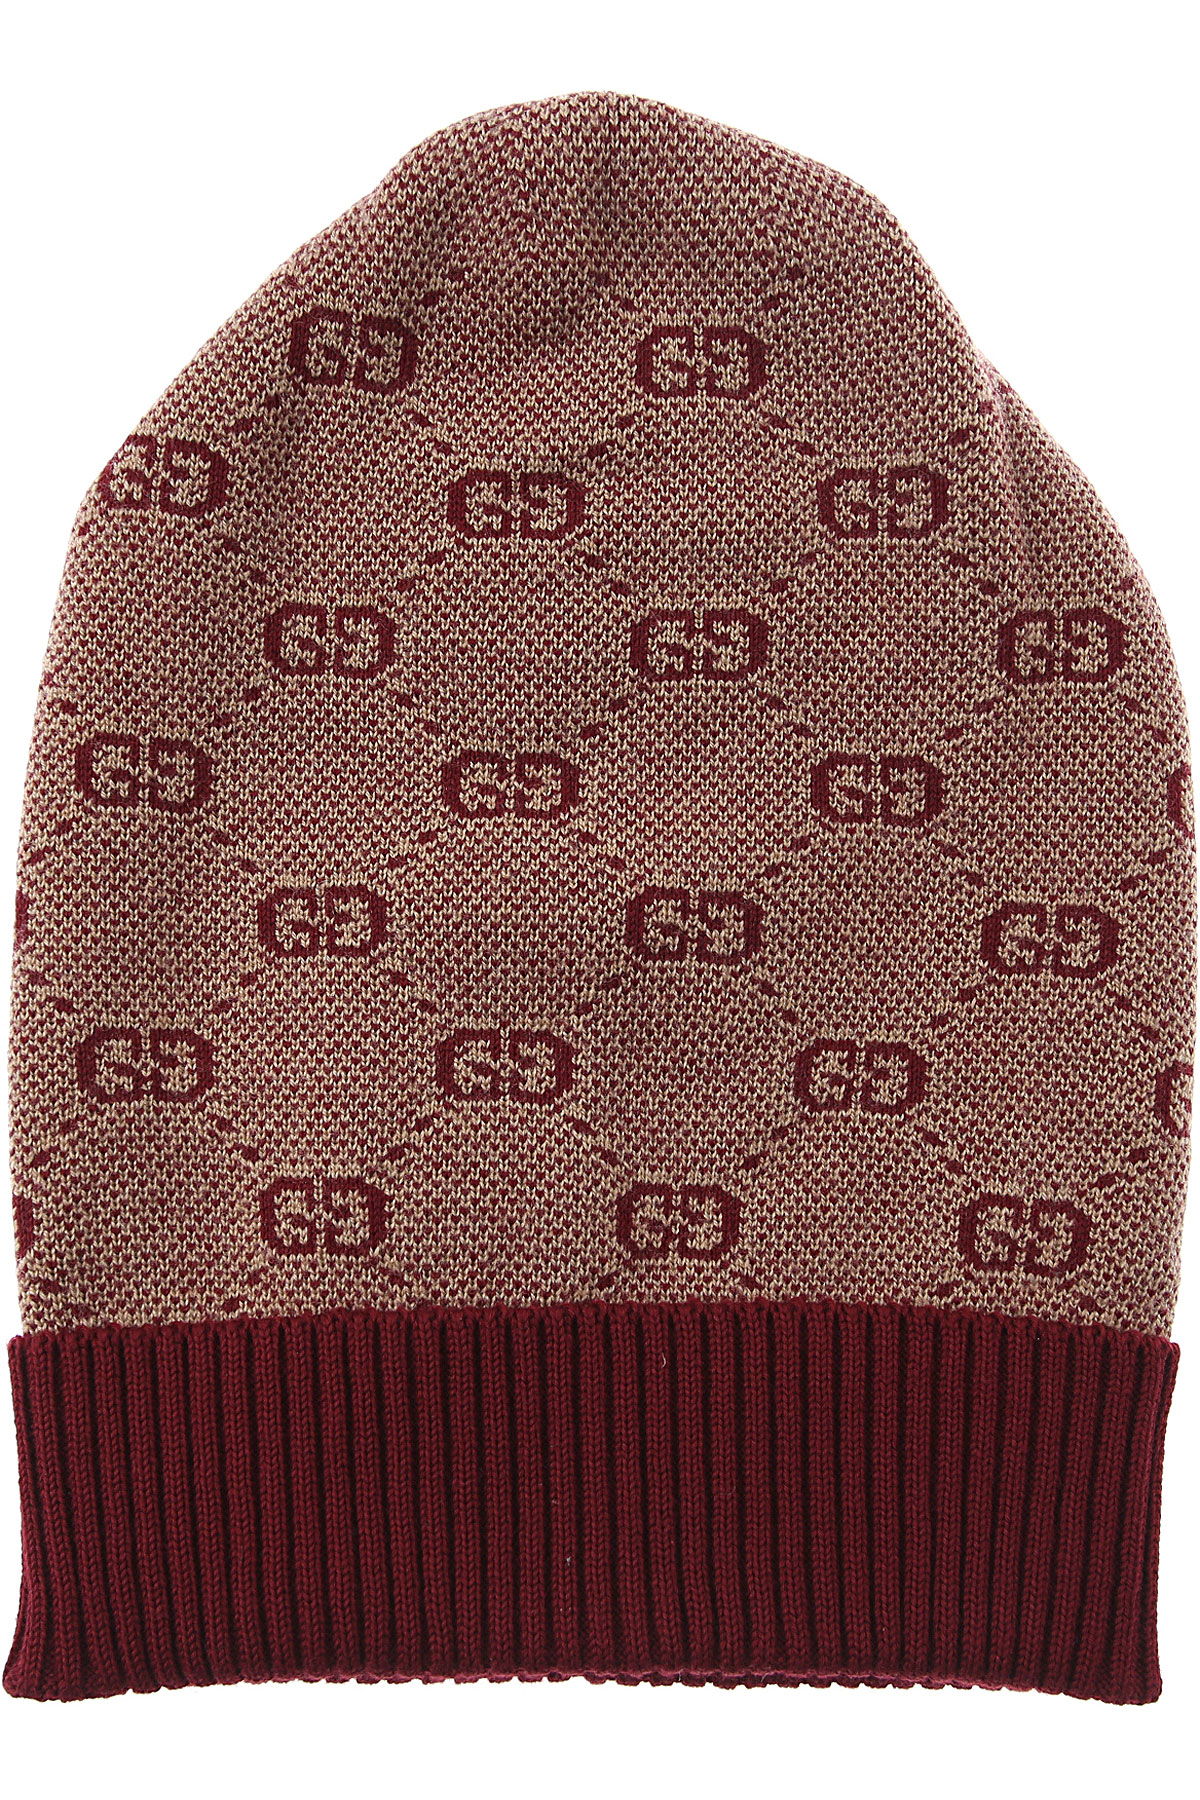 Gucci Kinder Hut für Jungen, Bordeauxrot, Wolle, 2017, M one size S